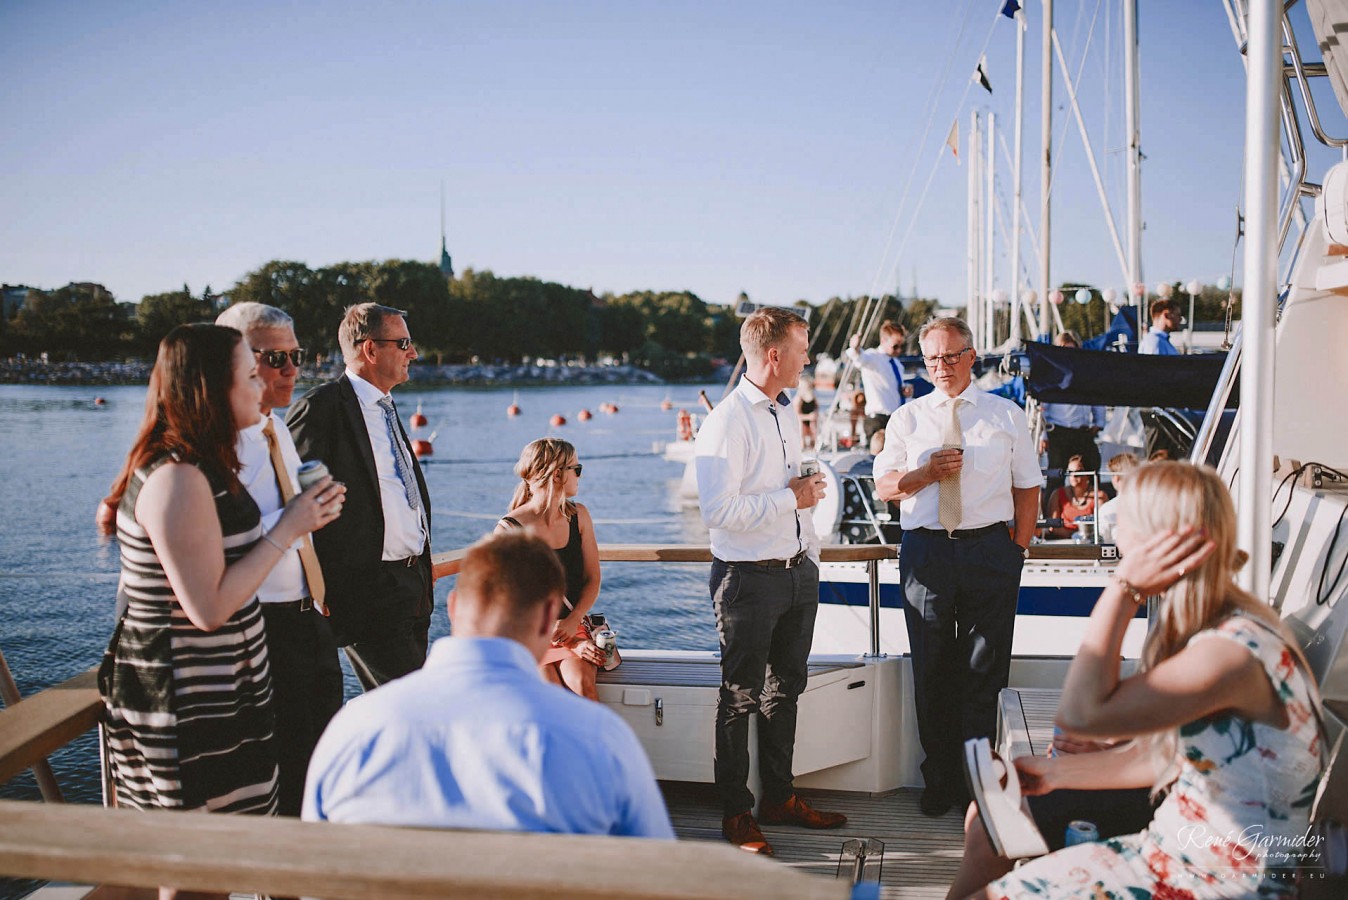 haakuvaaja-helsinki-wedding-photographer-finland-valokuvaaja-134